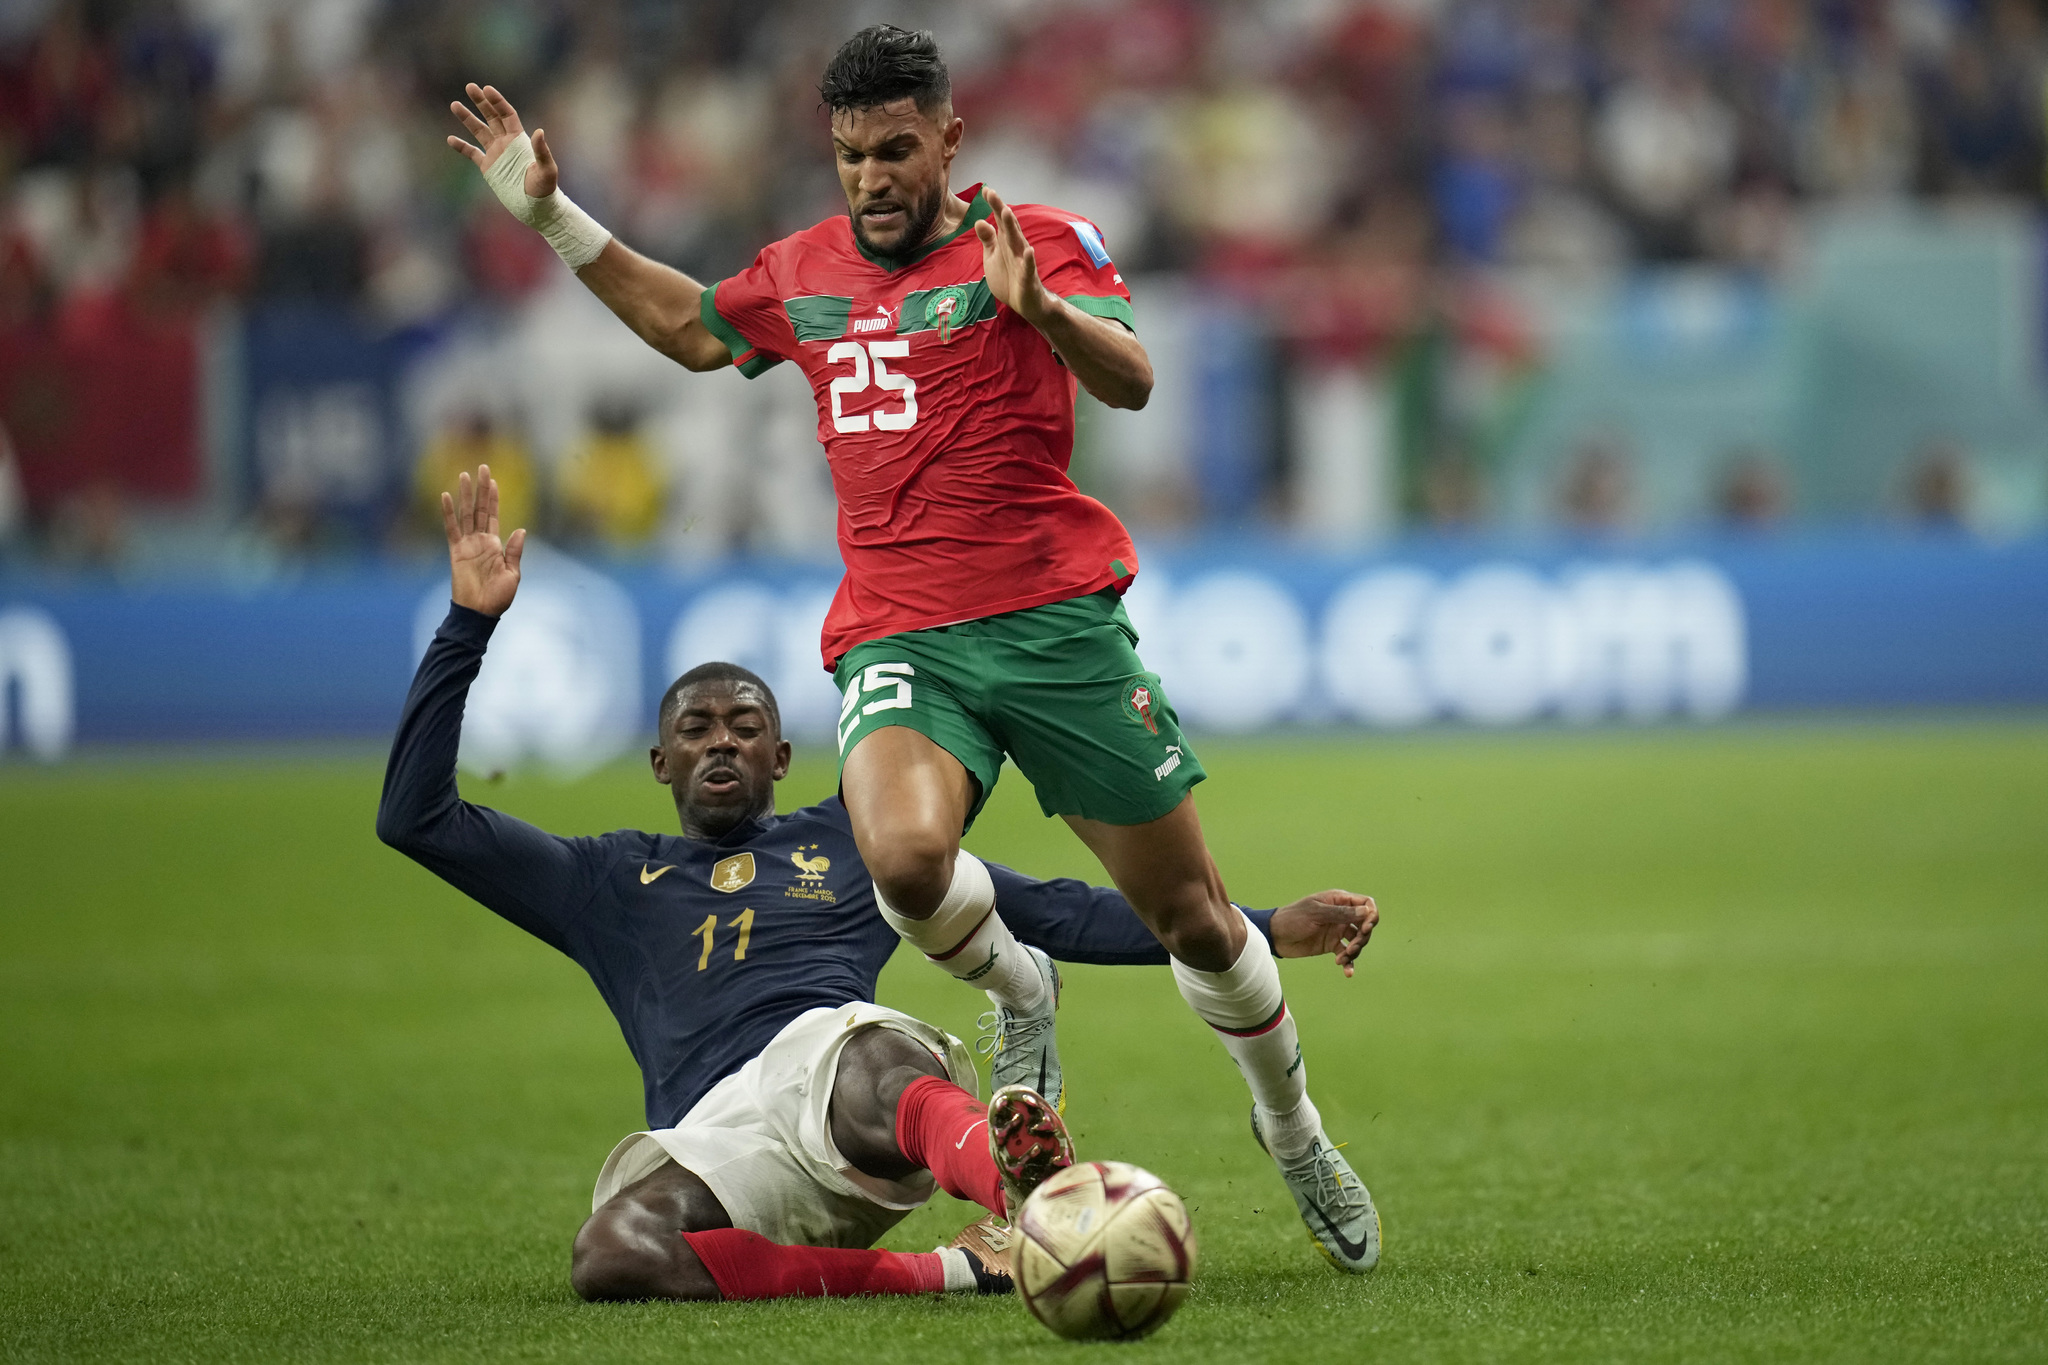 Maroc không chỉ là đối thủ khó chịu vì hàng thủ vững chắc mà còn bởi đội hình đa dạng của họ.